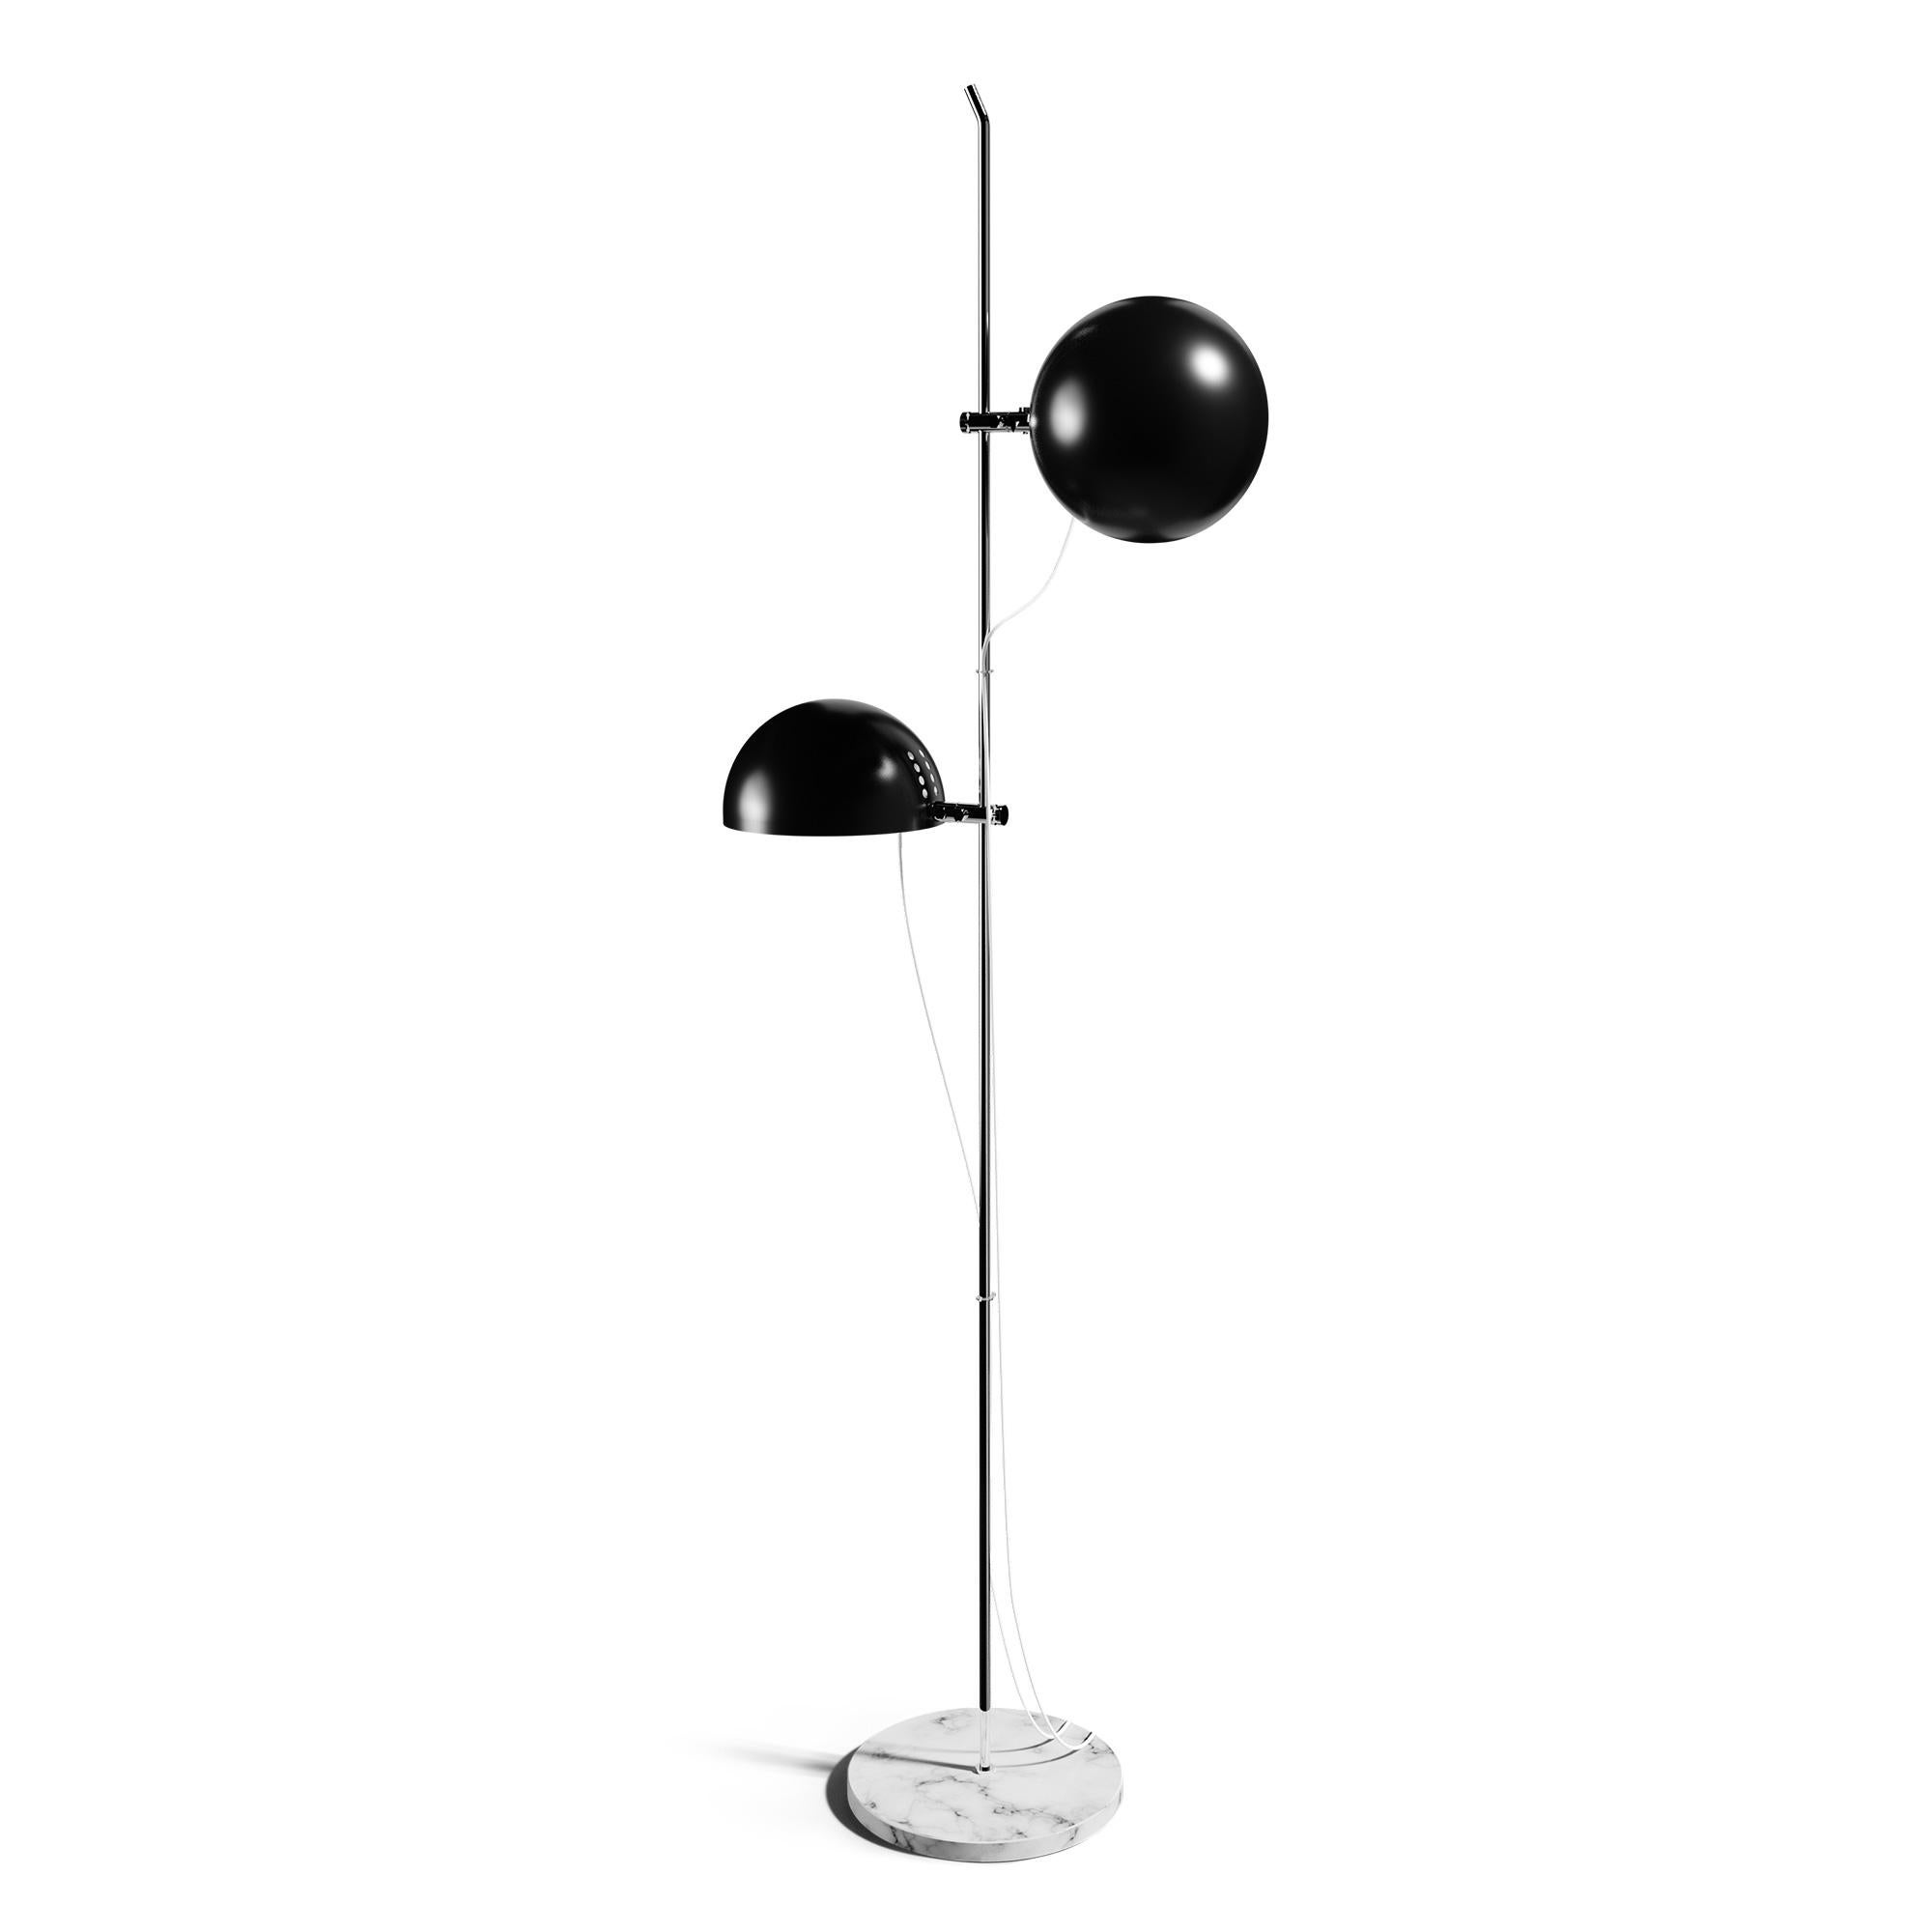 Alain Richard 'A22' Desk Lamp in White for Disderot For Sale 7